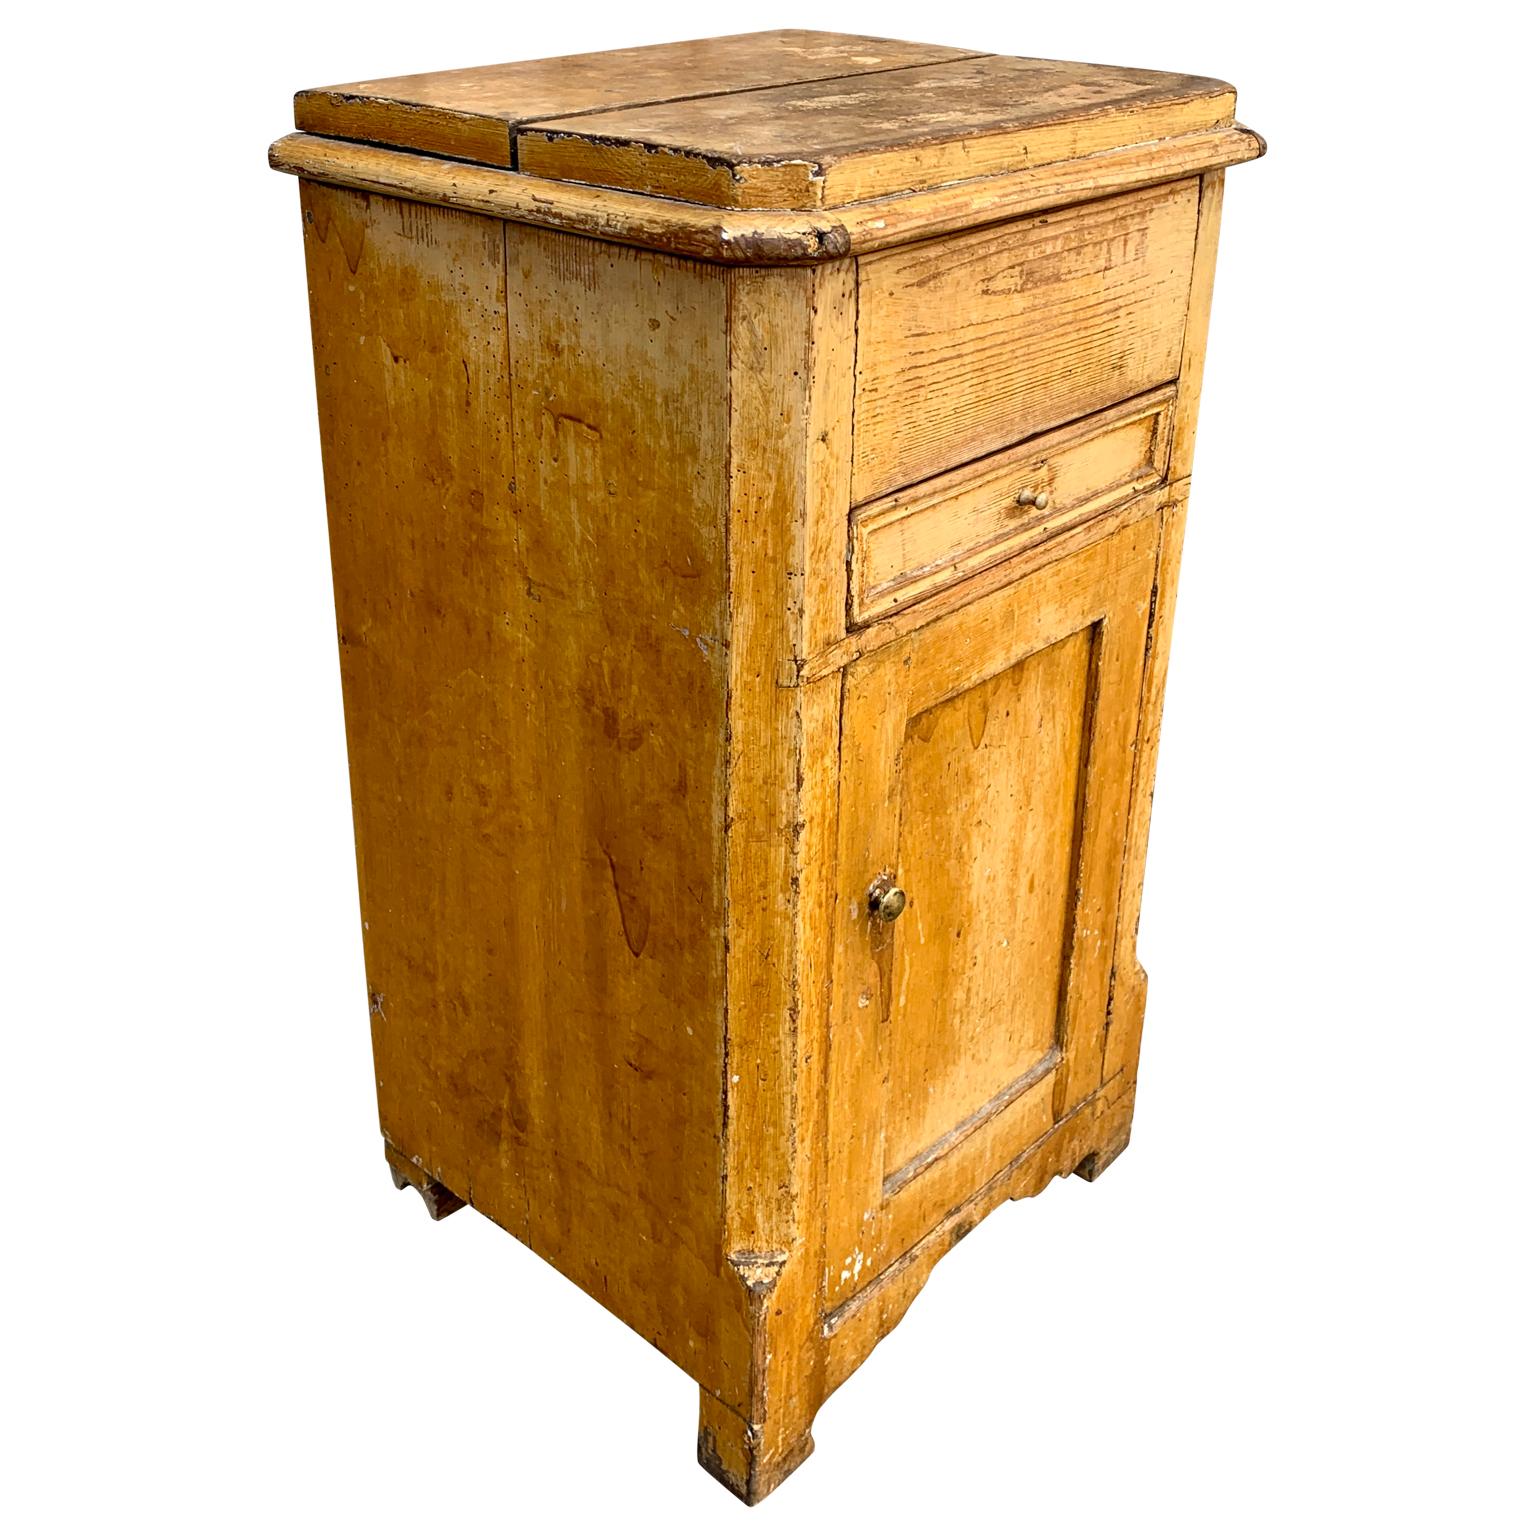 Gelber original bemalter schwedischer Nachttisch oder Beistelltisch aus dem frühen 19. Jahrhundert mit einer Schublade, anhebbarer Platte und einer Tür an der Vorderseite. Dieses gustavianische Landhausmöbel hat seine ursprüngliche Farbe, Patina und